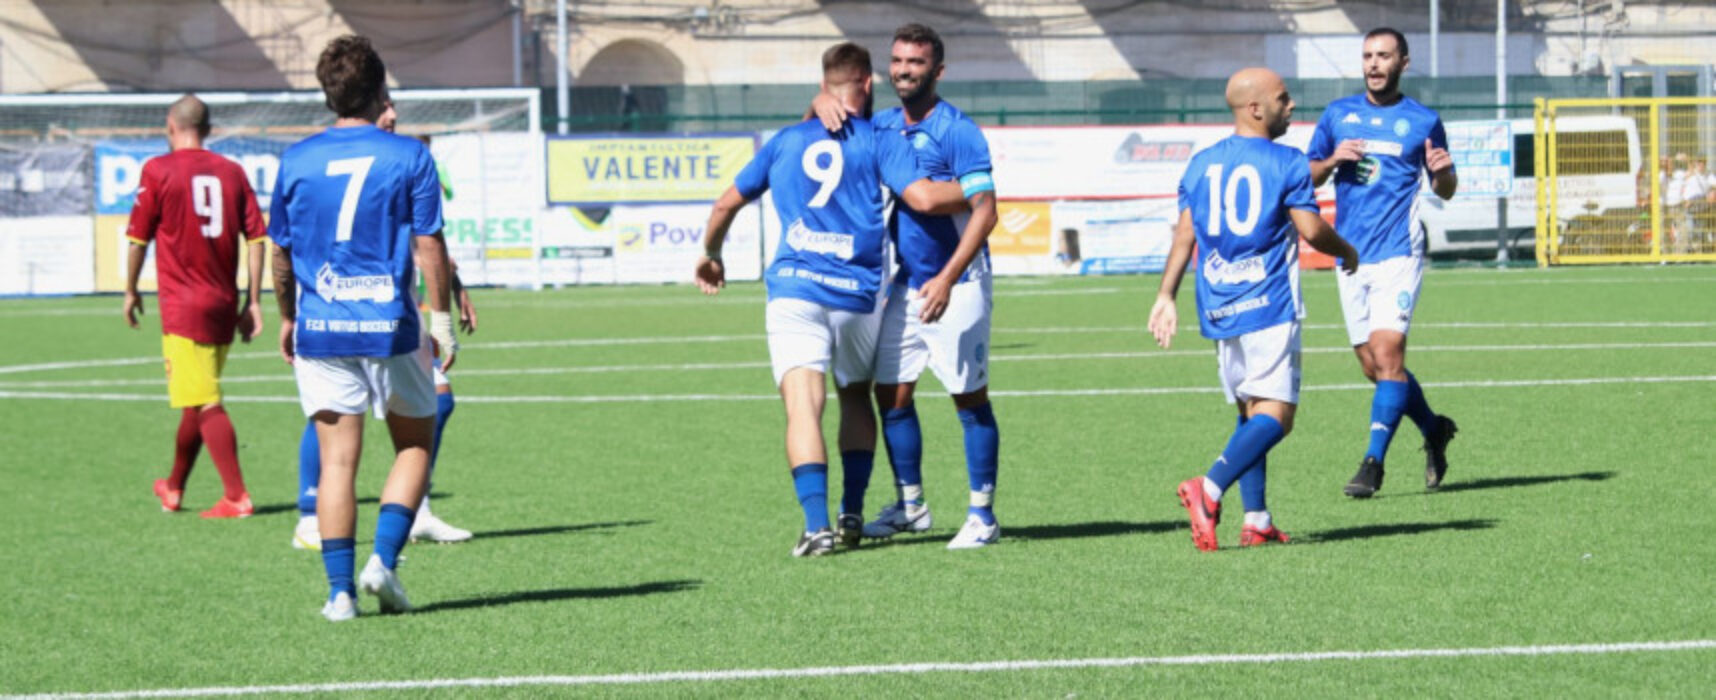 Coppa Puglia, Virtus Bisceglie si porta a casa il match d’andata contro Bari